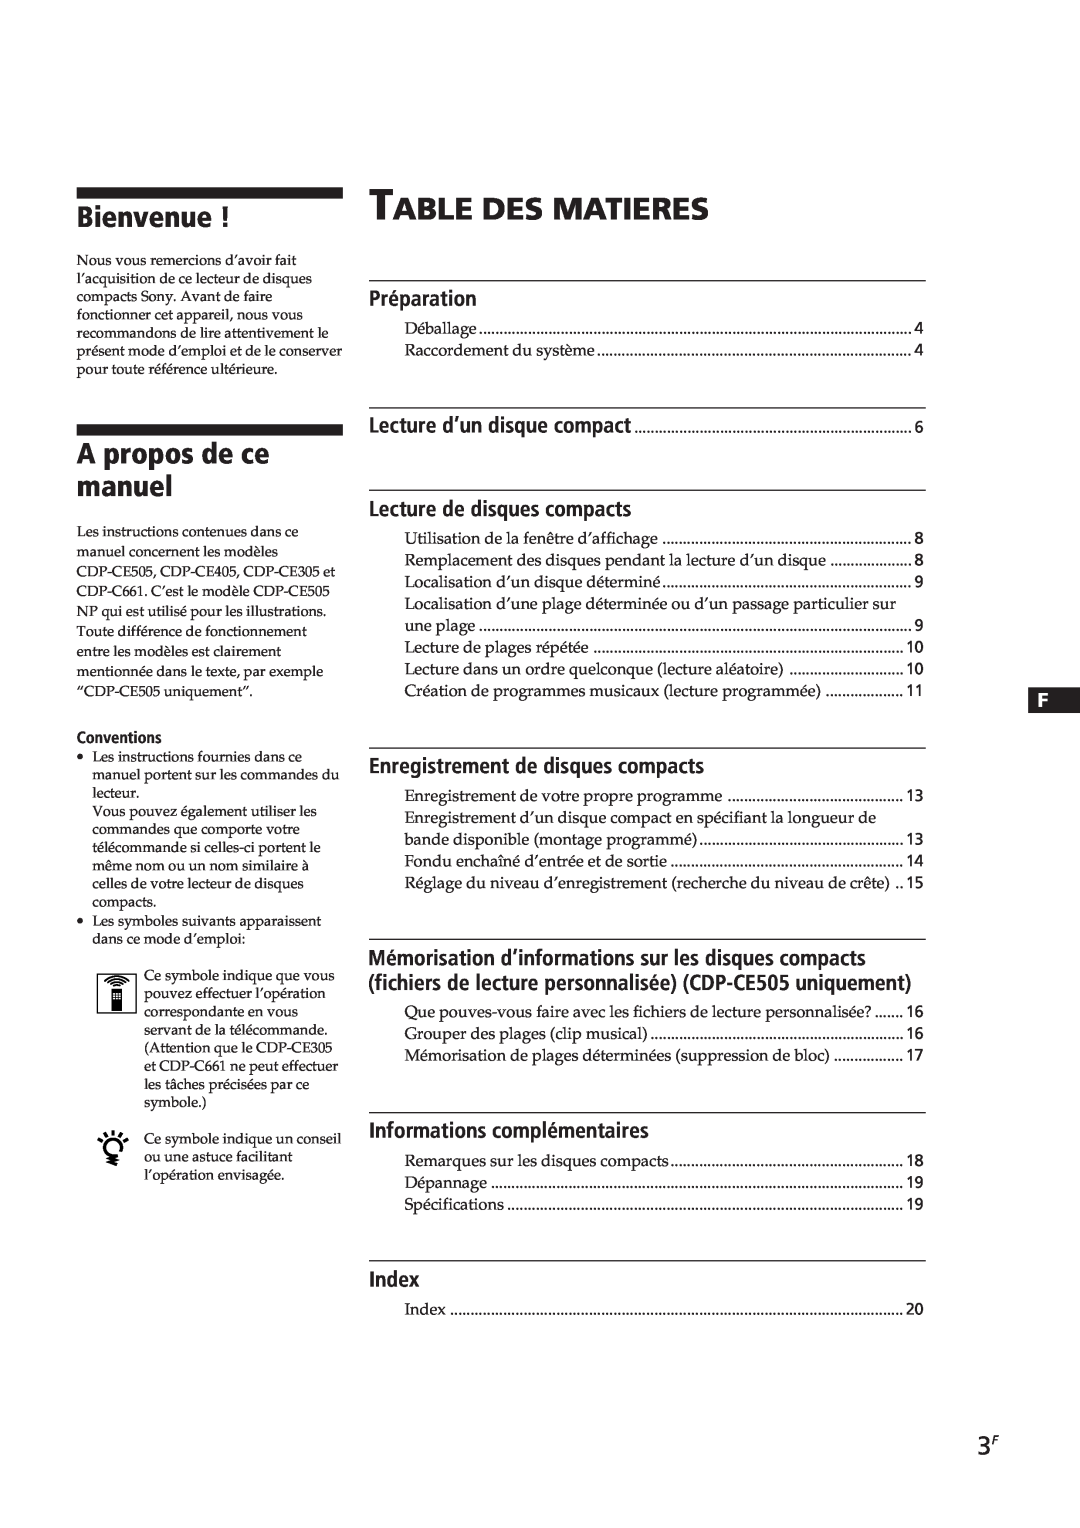 Sony CDP-CE405 manual Table Des Matieres, Bienvenue, A propos de ce manuel, Préparation, Lecture de disques compacts, Index 